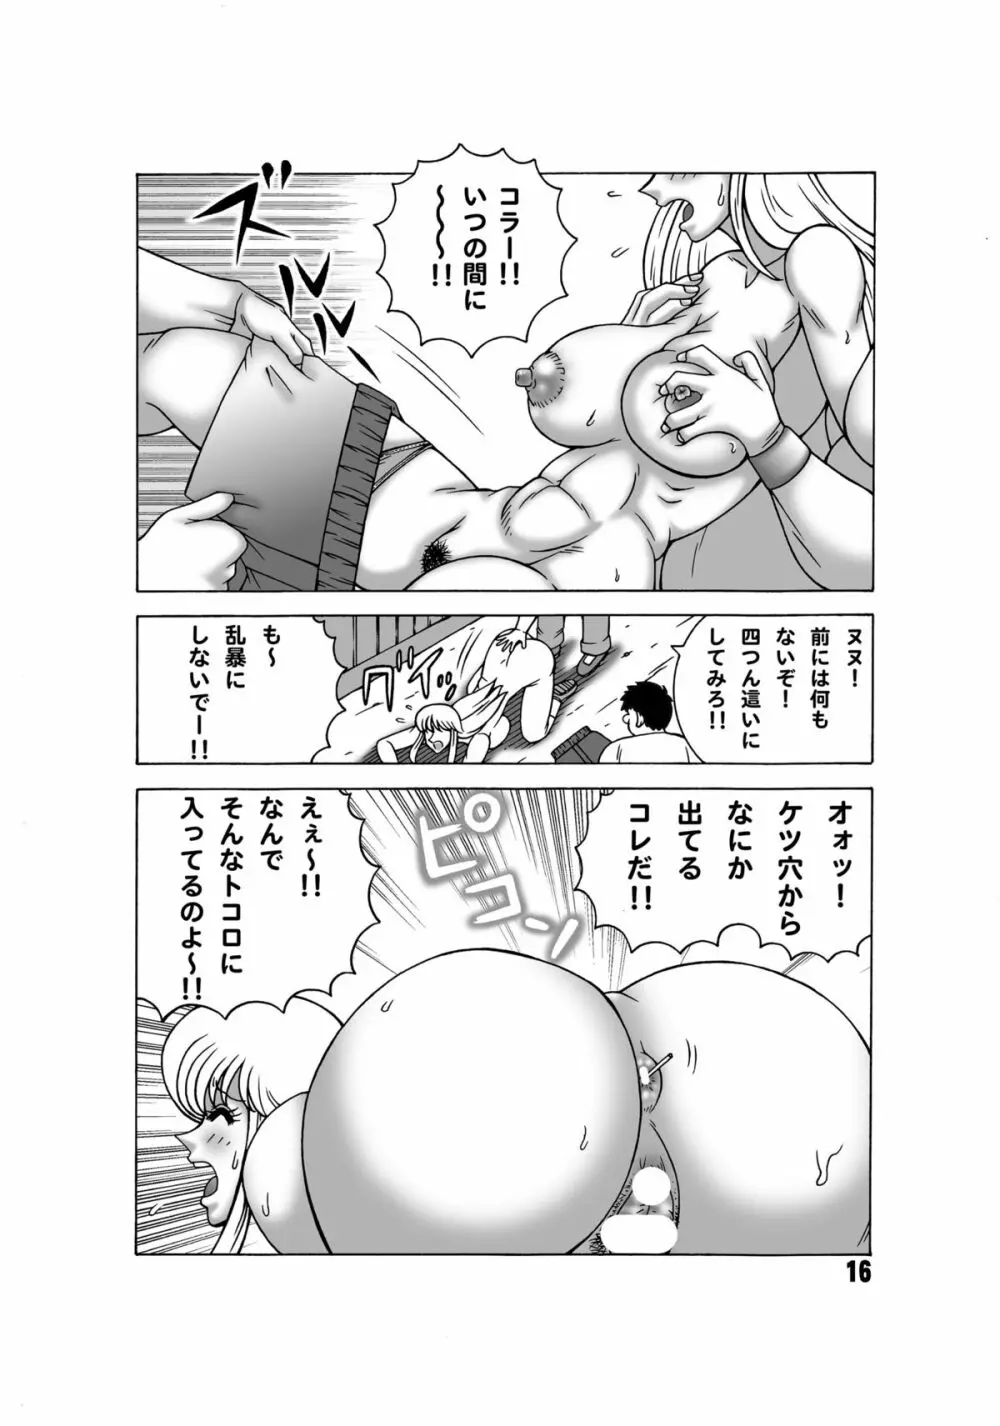 こち亀ダイナマイト 13 - page15